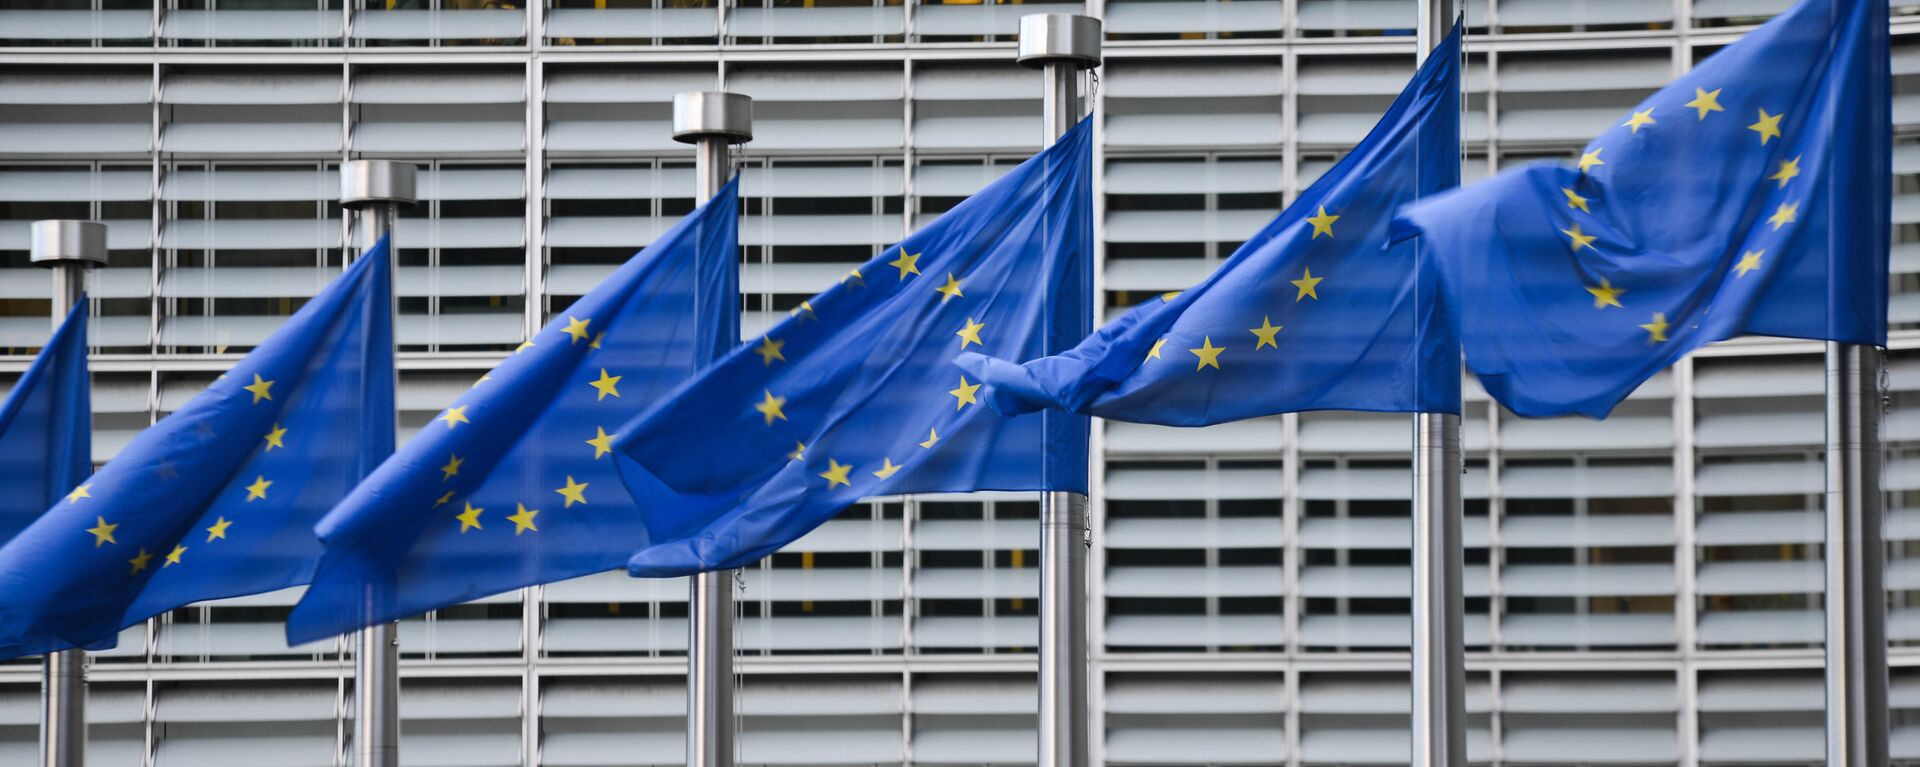 Евросоюз. Флаги ЕС. Штаб-квартира организации в Брюсселе - Sputnik Грузия, 1920, 26.02.2022